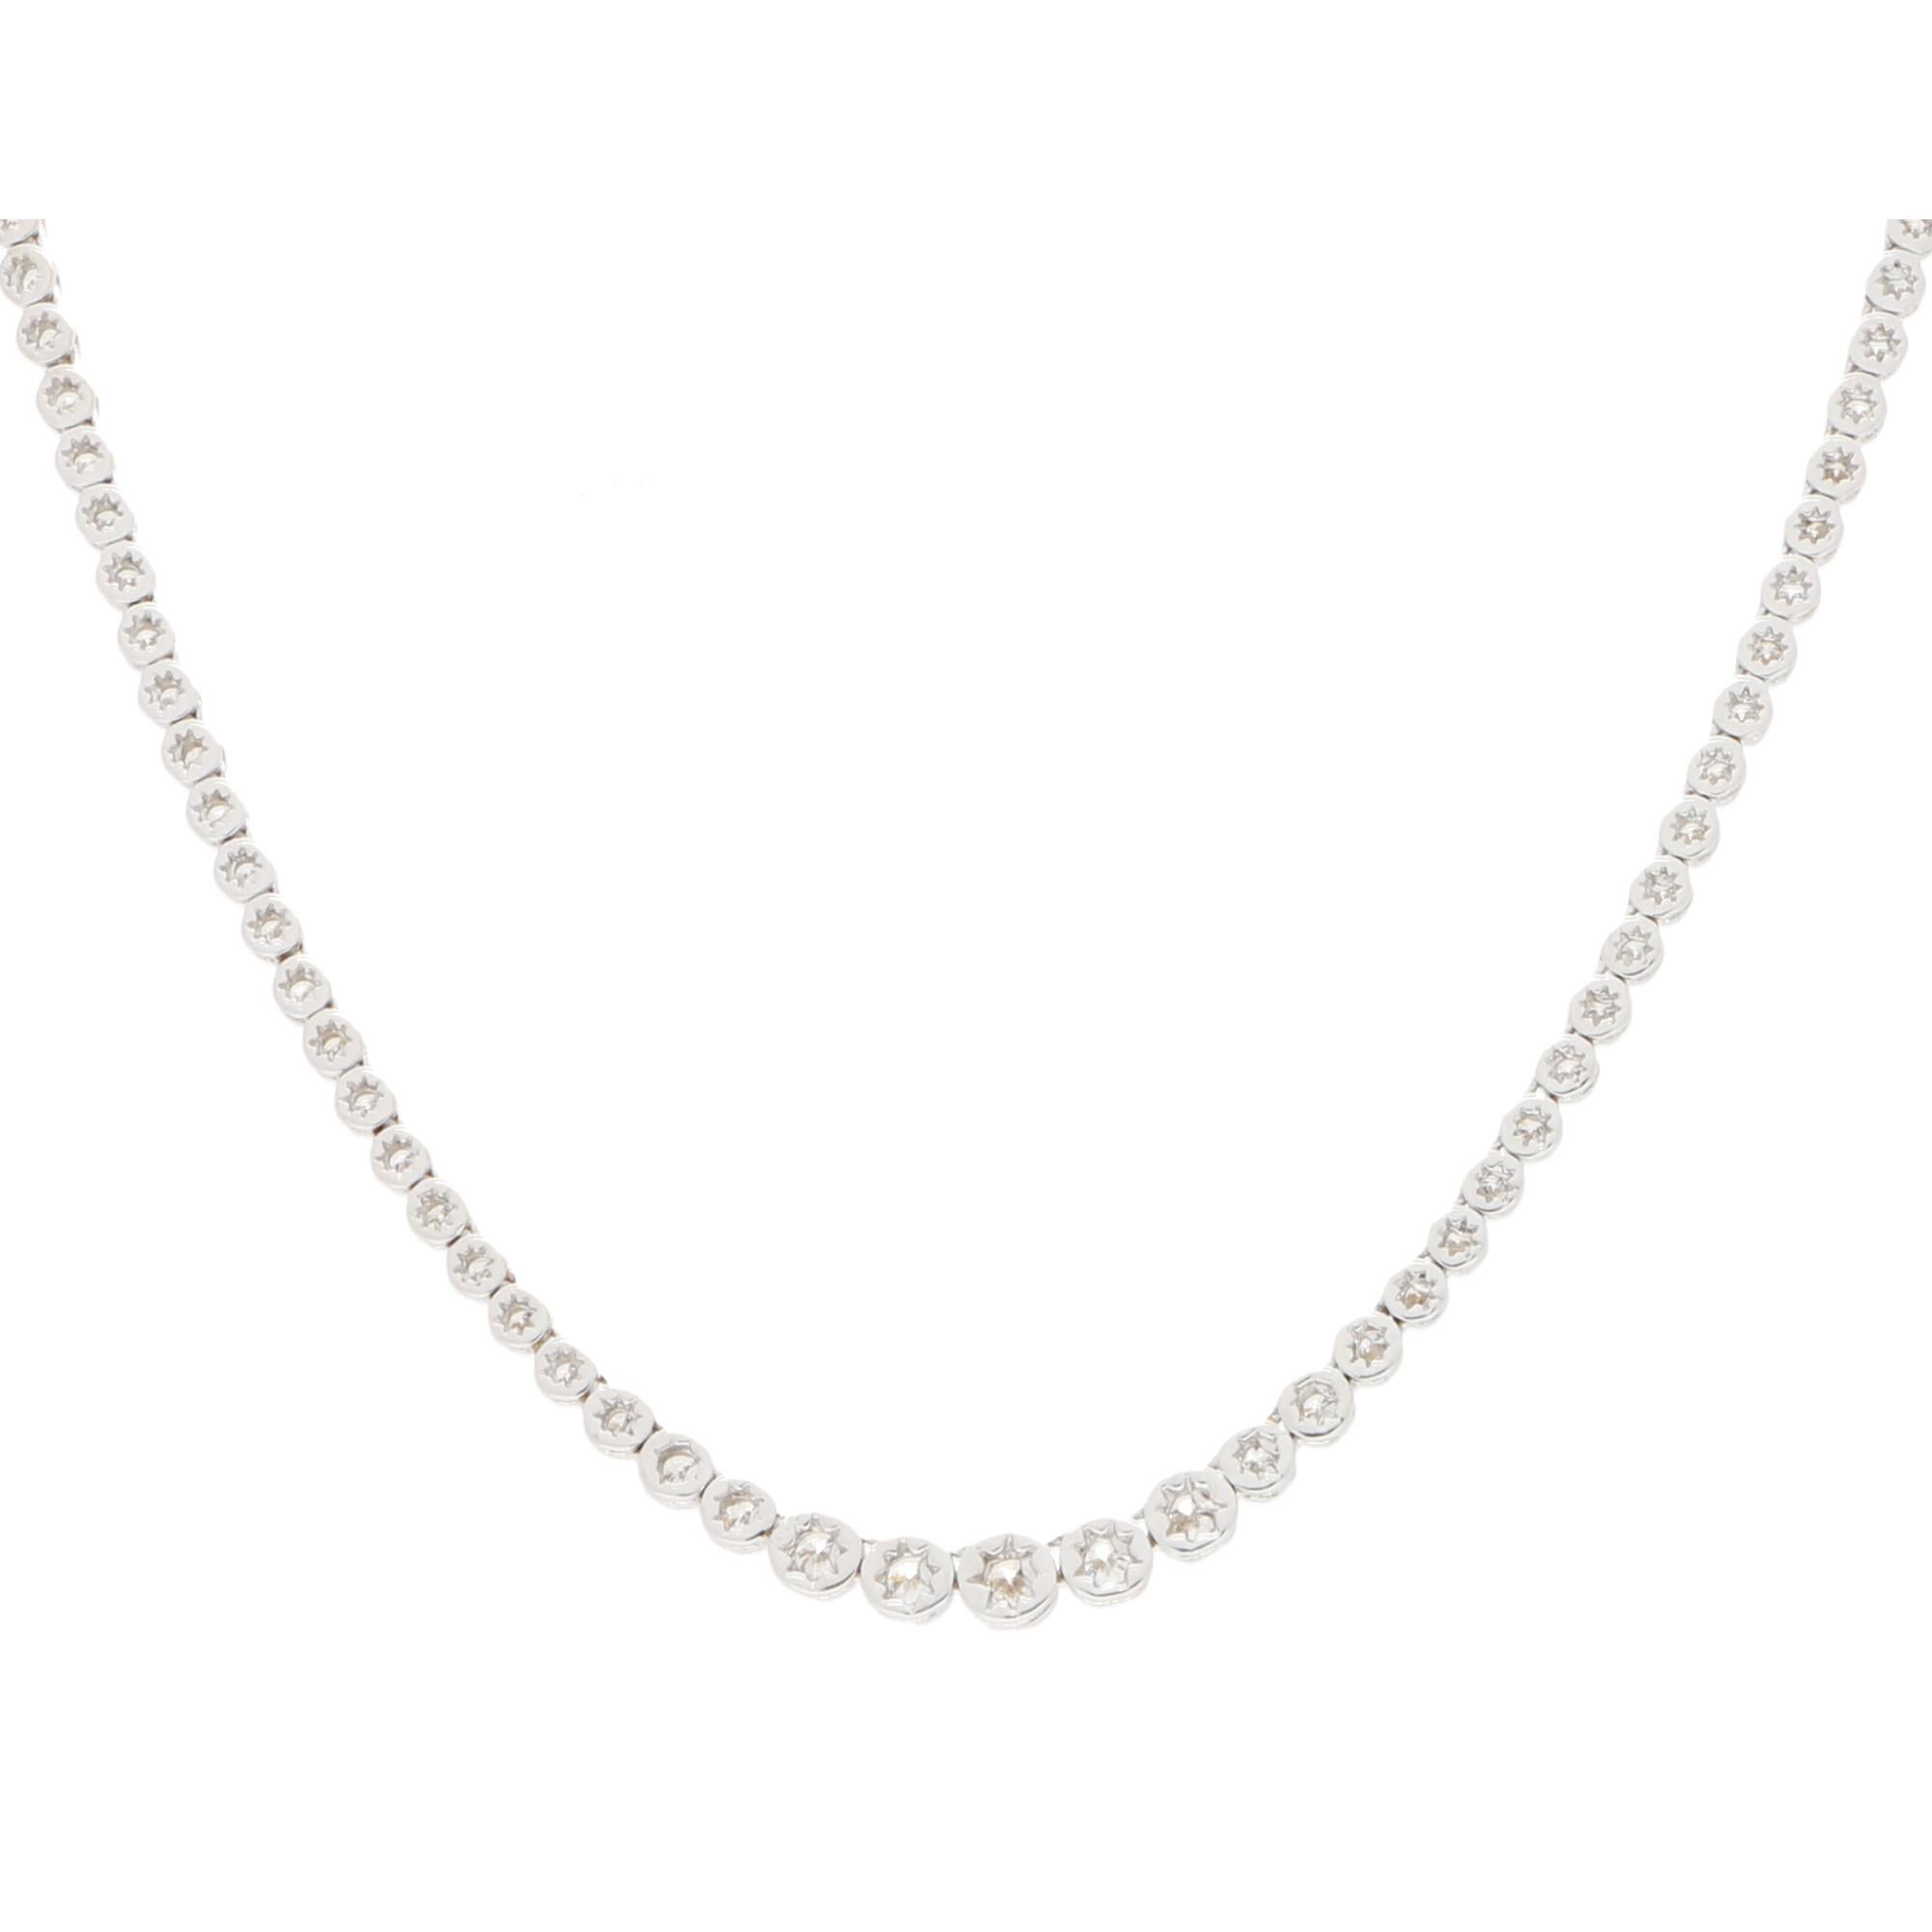 Modern Diamond Riviere Necklace Set in 18 Karat White Gold